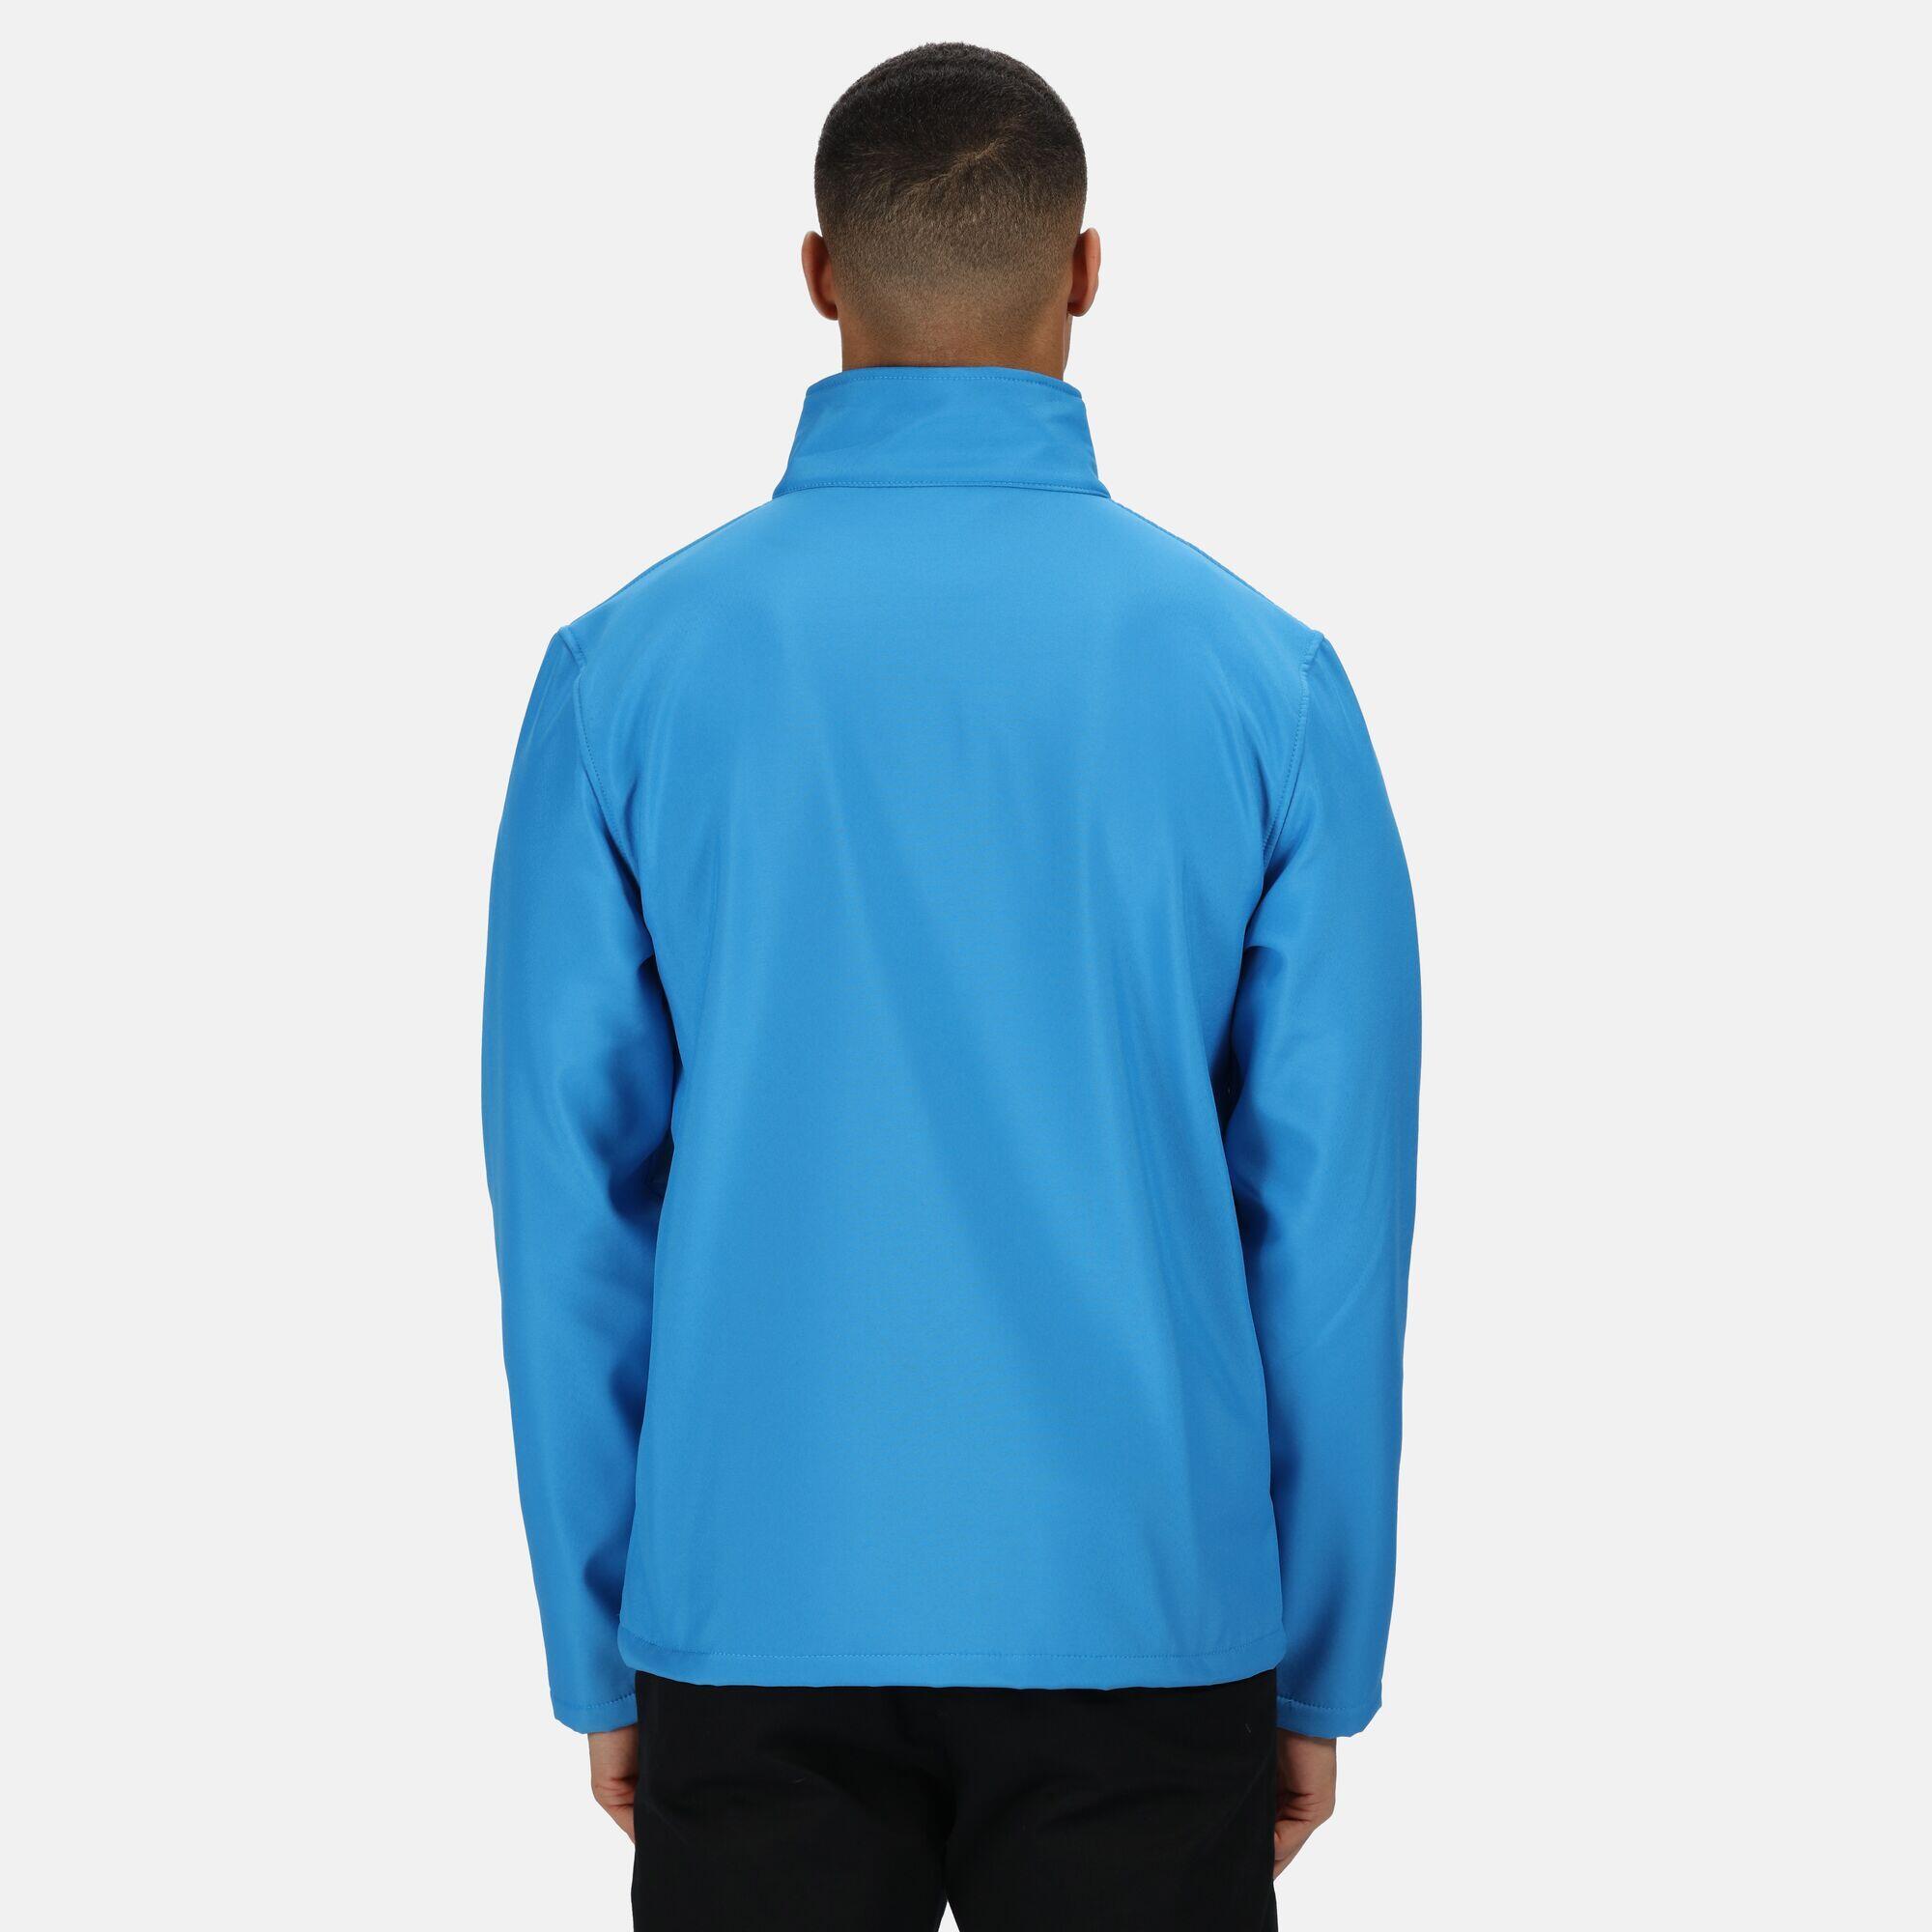 Mens Ablaze Printable Softshell Jacket (French Blue/Navy) 4/5